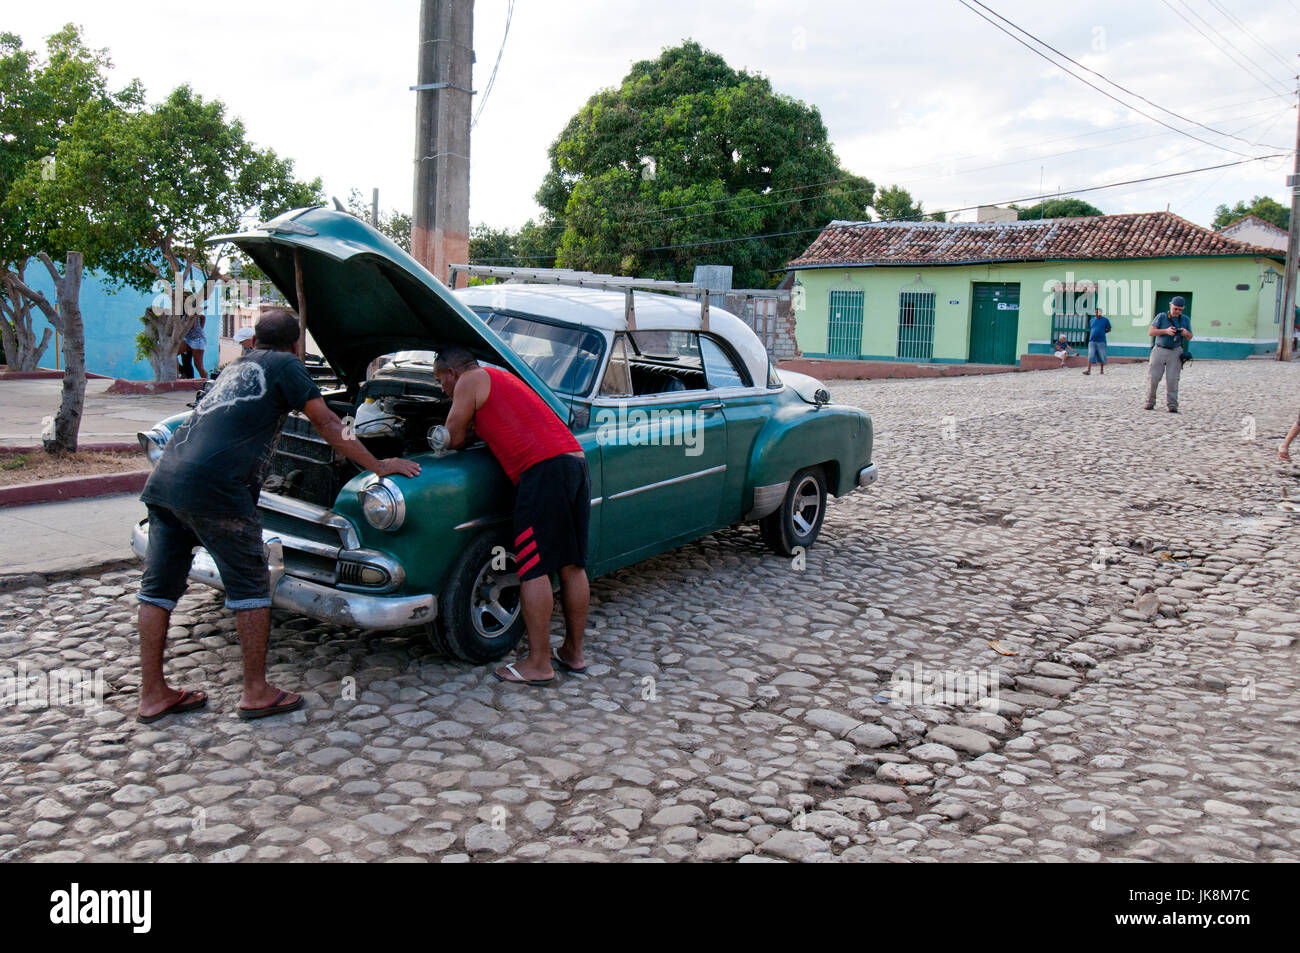 Les hommes cubains travaillant à peine de vieilles voitures américaines des années 1950 à Trinidad Cuba Banque D'Images